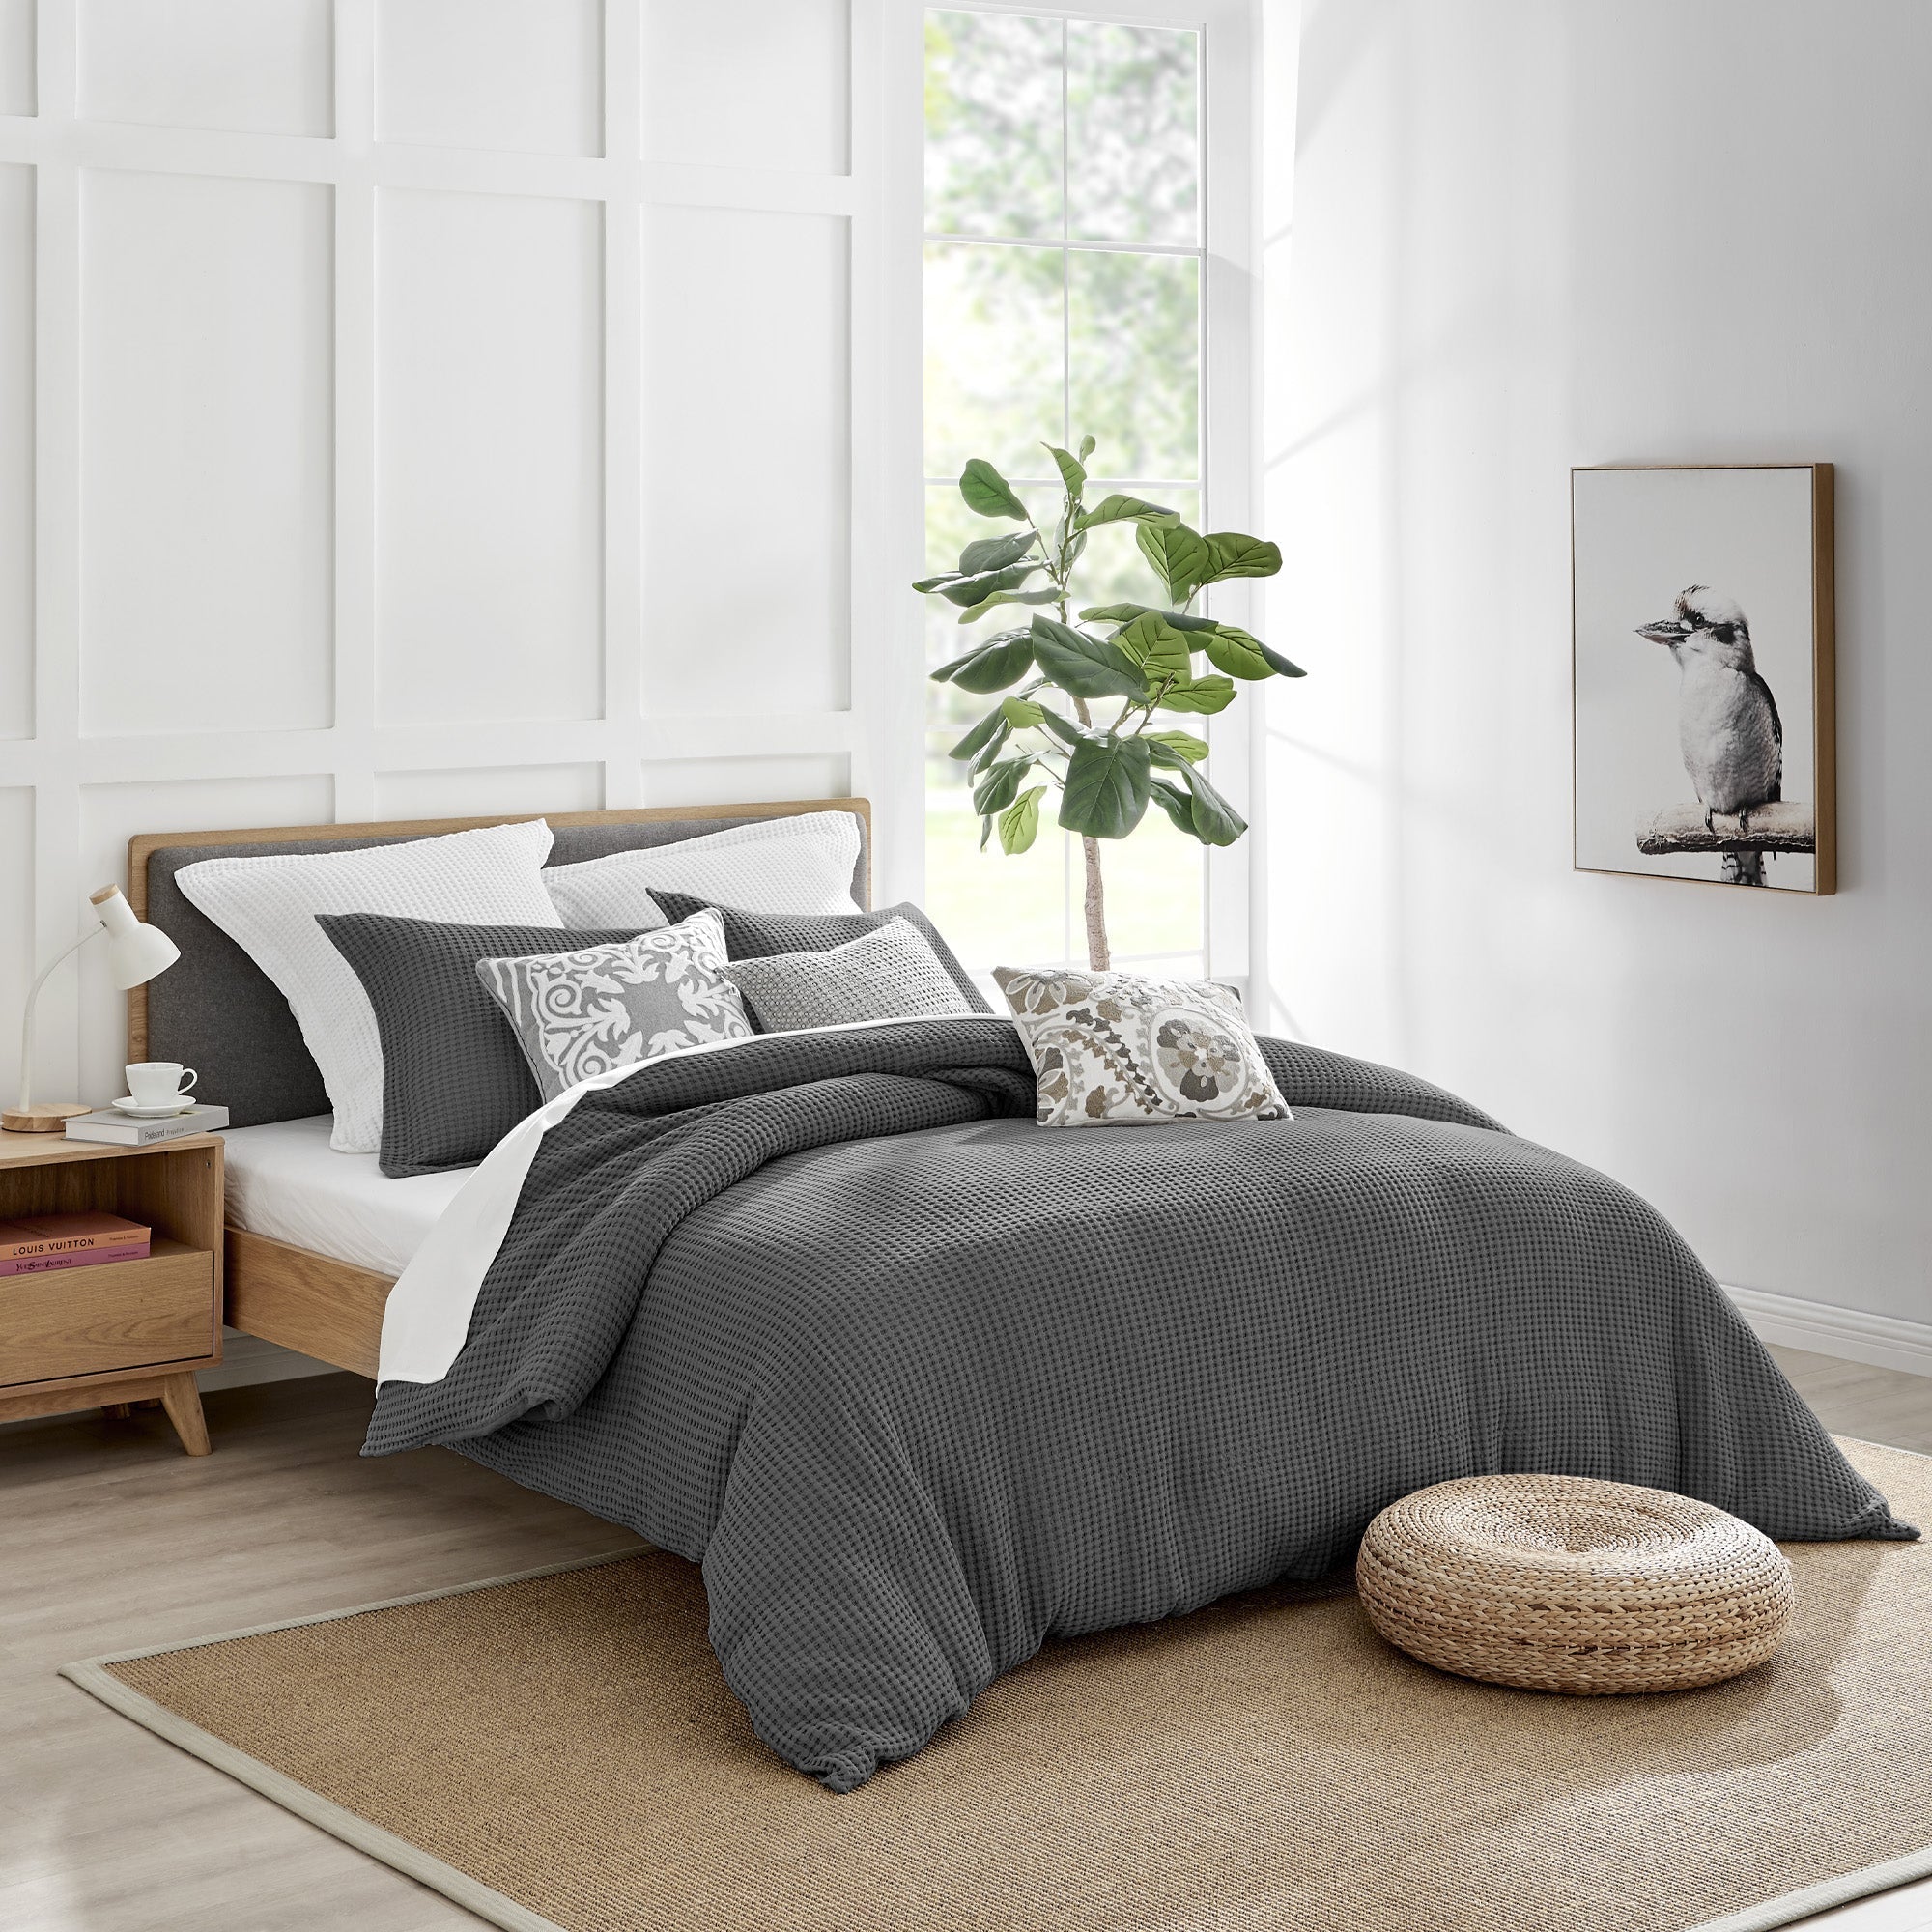 Louis Vuitton Inspired Bedsheet - Duvet And 4 Pillowcases